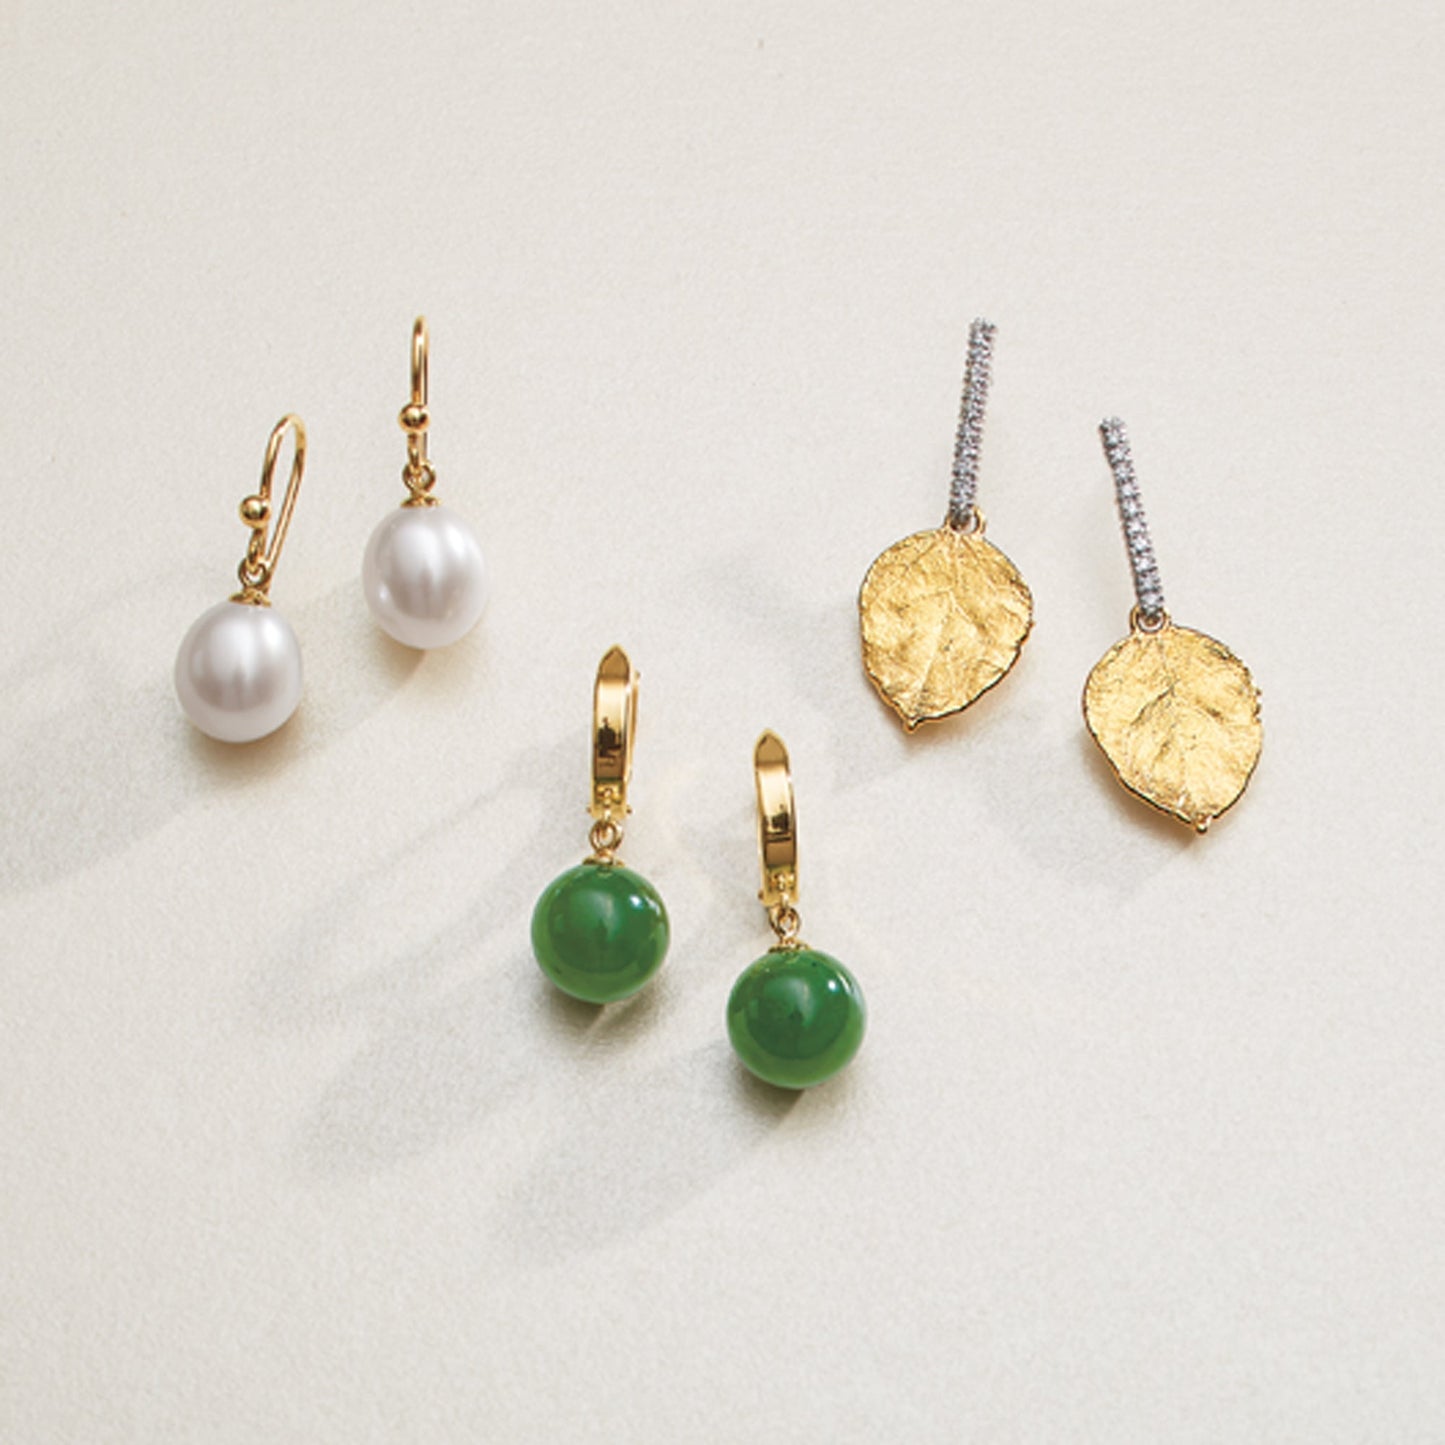 Soho Earrings in Green Nephrite Jade